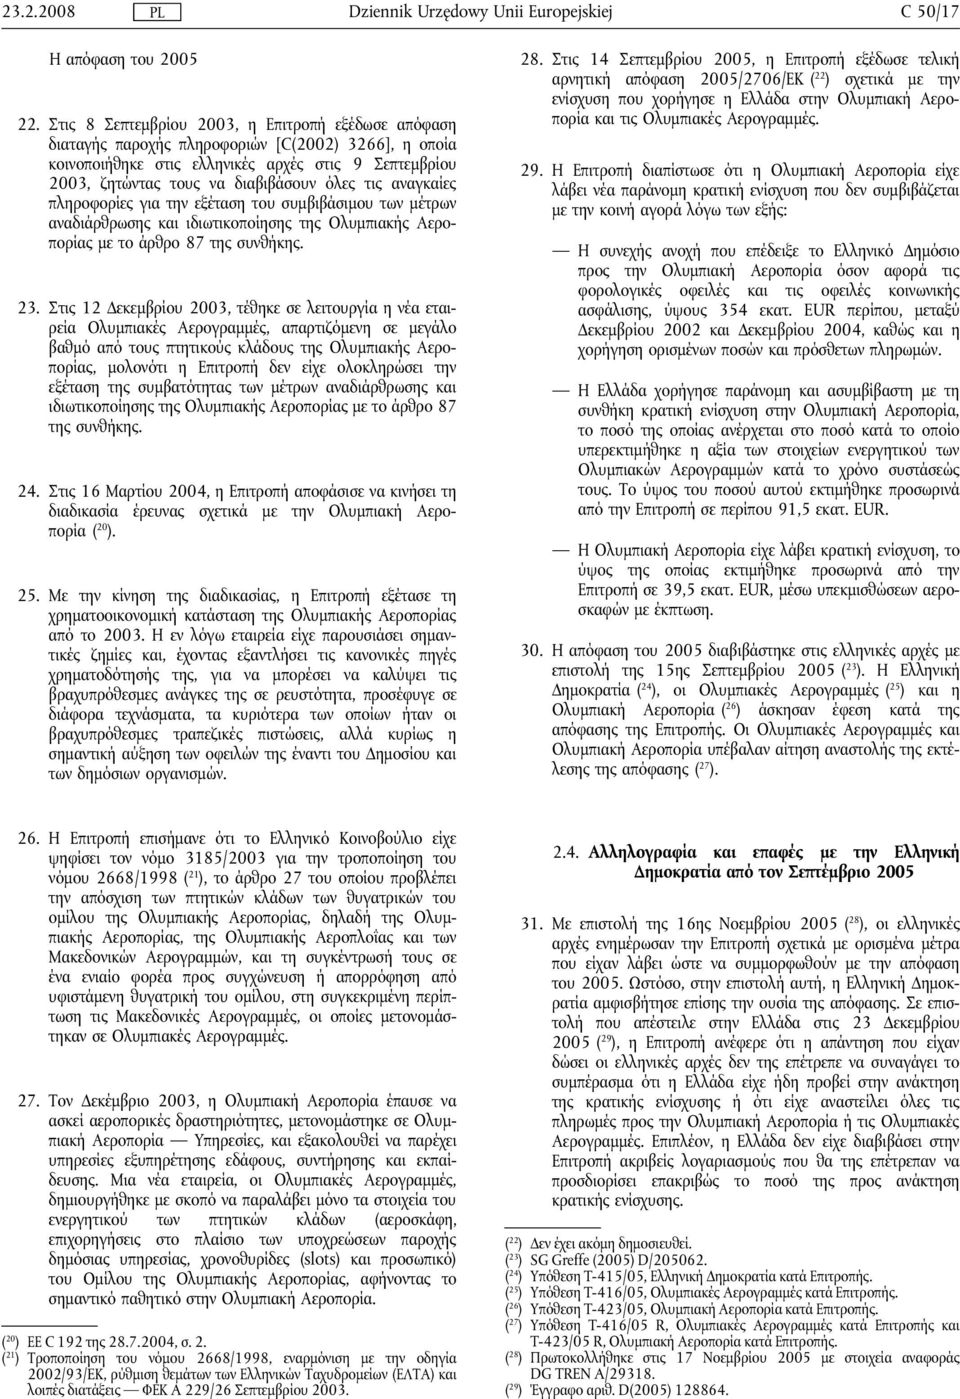 τις αναγκαίες πληροφορίες για την εξέταση του συμβιβάσιμου των μέτρων αναδιάρθρωσης και ιδιωτικοποίησης της Ολυμπιακής Αεροπορίας με το άρθρο 87 της συνθήκης. 23.